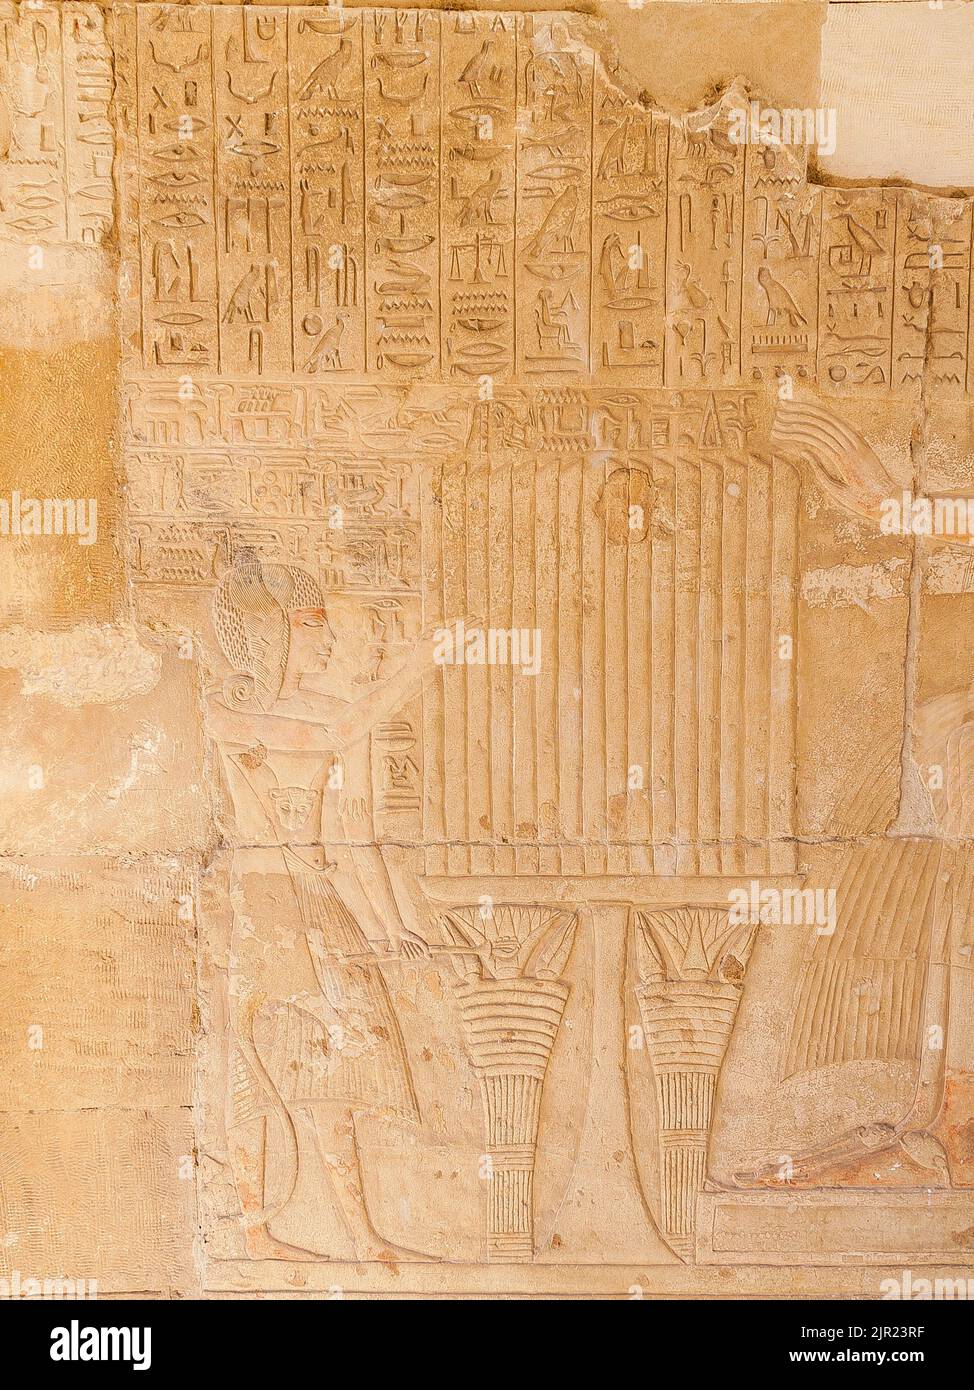 Égypte, Saqqara, tombeau de Horemheb, salle de statue, prêtre Iunmutef censurant Horemheb devant une table d'offrande. Banque D'Images